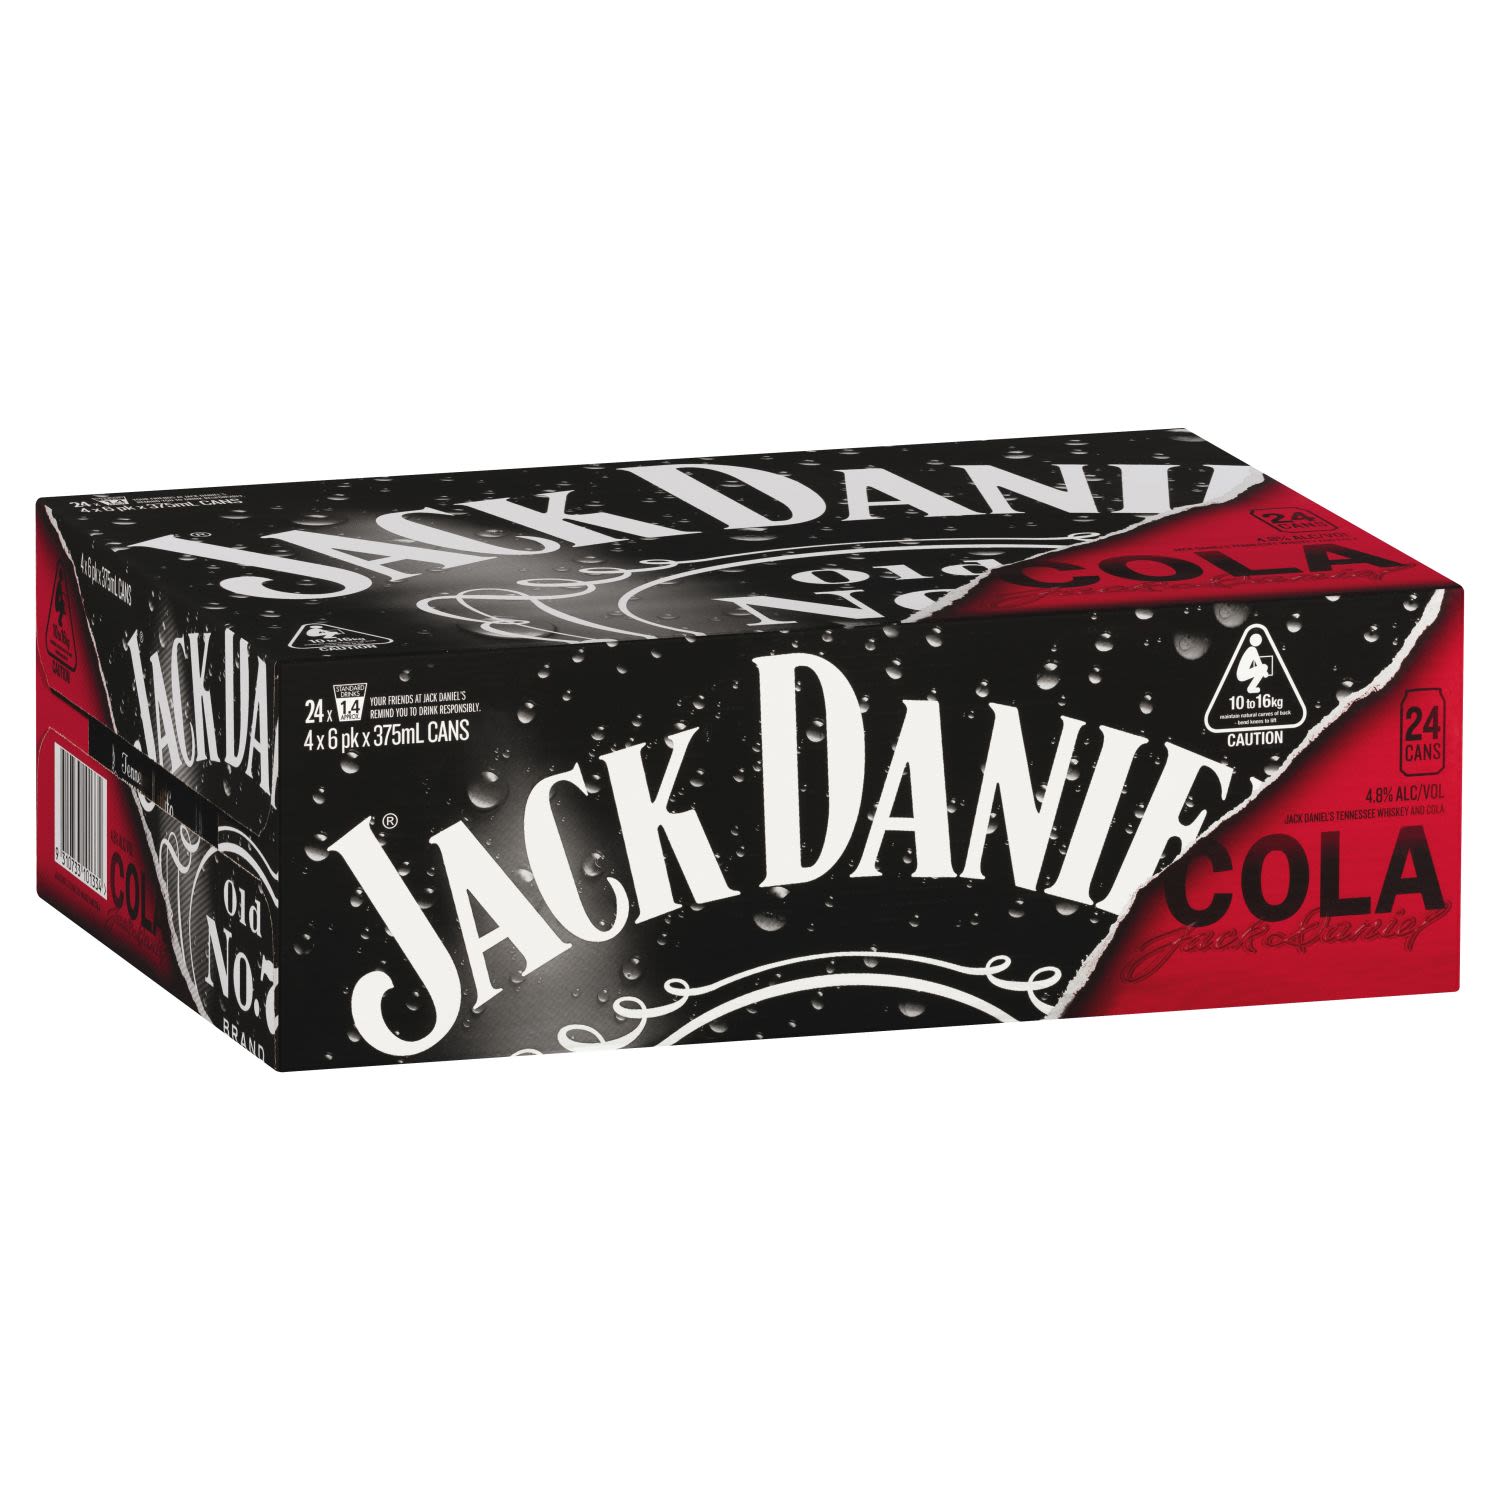 Jack Daniel's & Cola Can 375mL<br /> <br />Alcohol Volume: 4.80%<br /><br />Pack Format: 24 Pack<br /><br />Standard Drinks: 1.4</br /><br />Pack Type: Can<br />